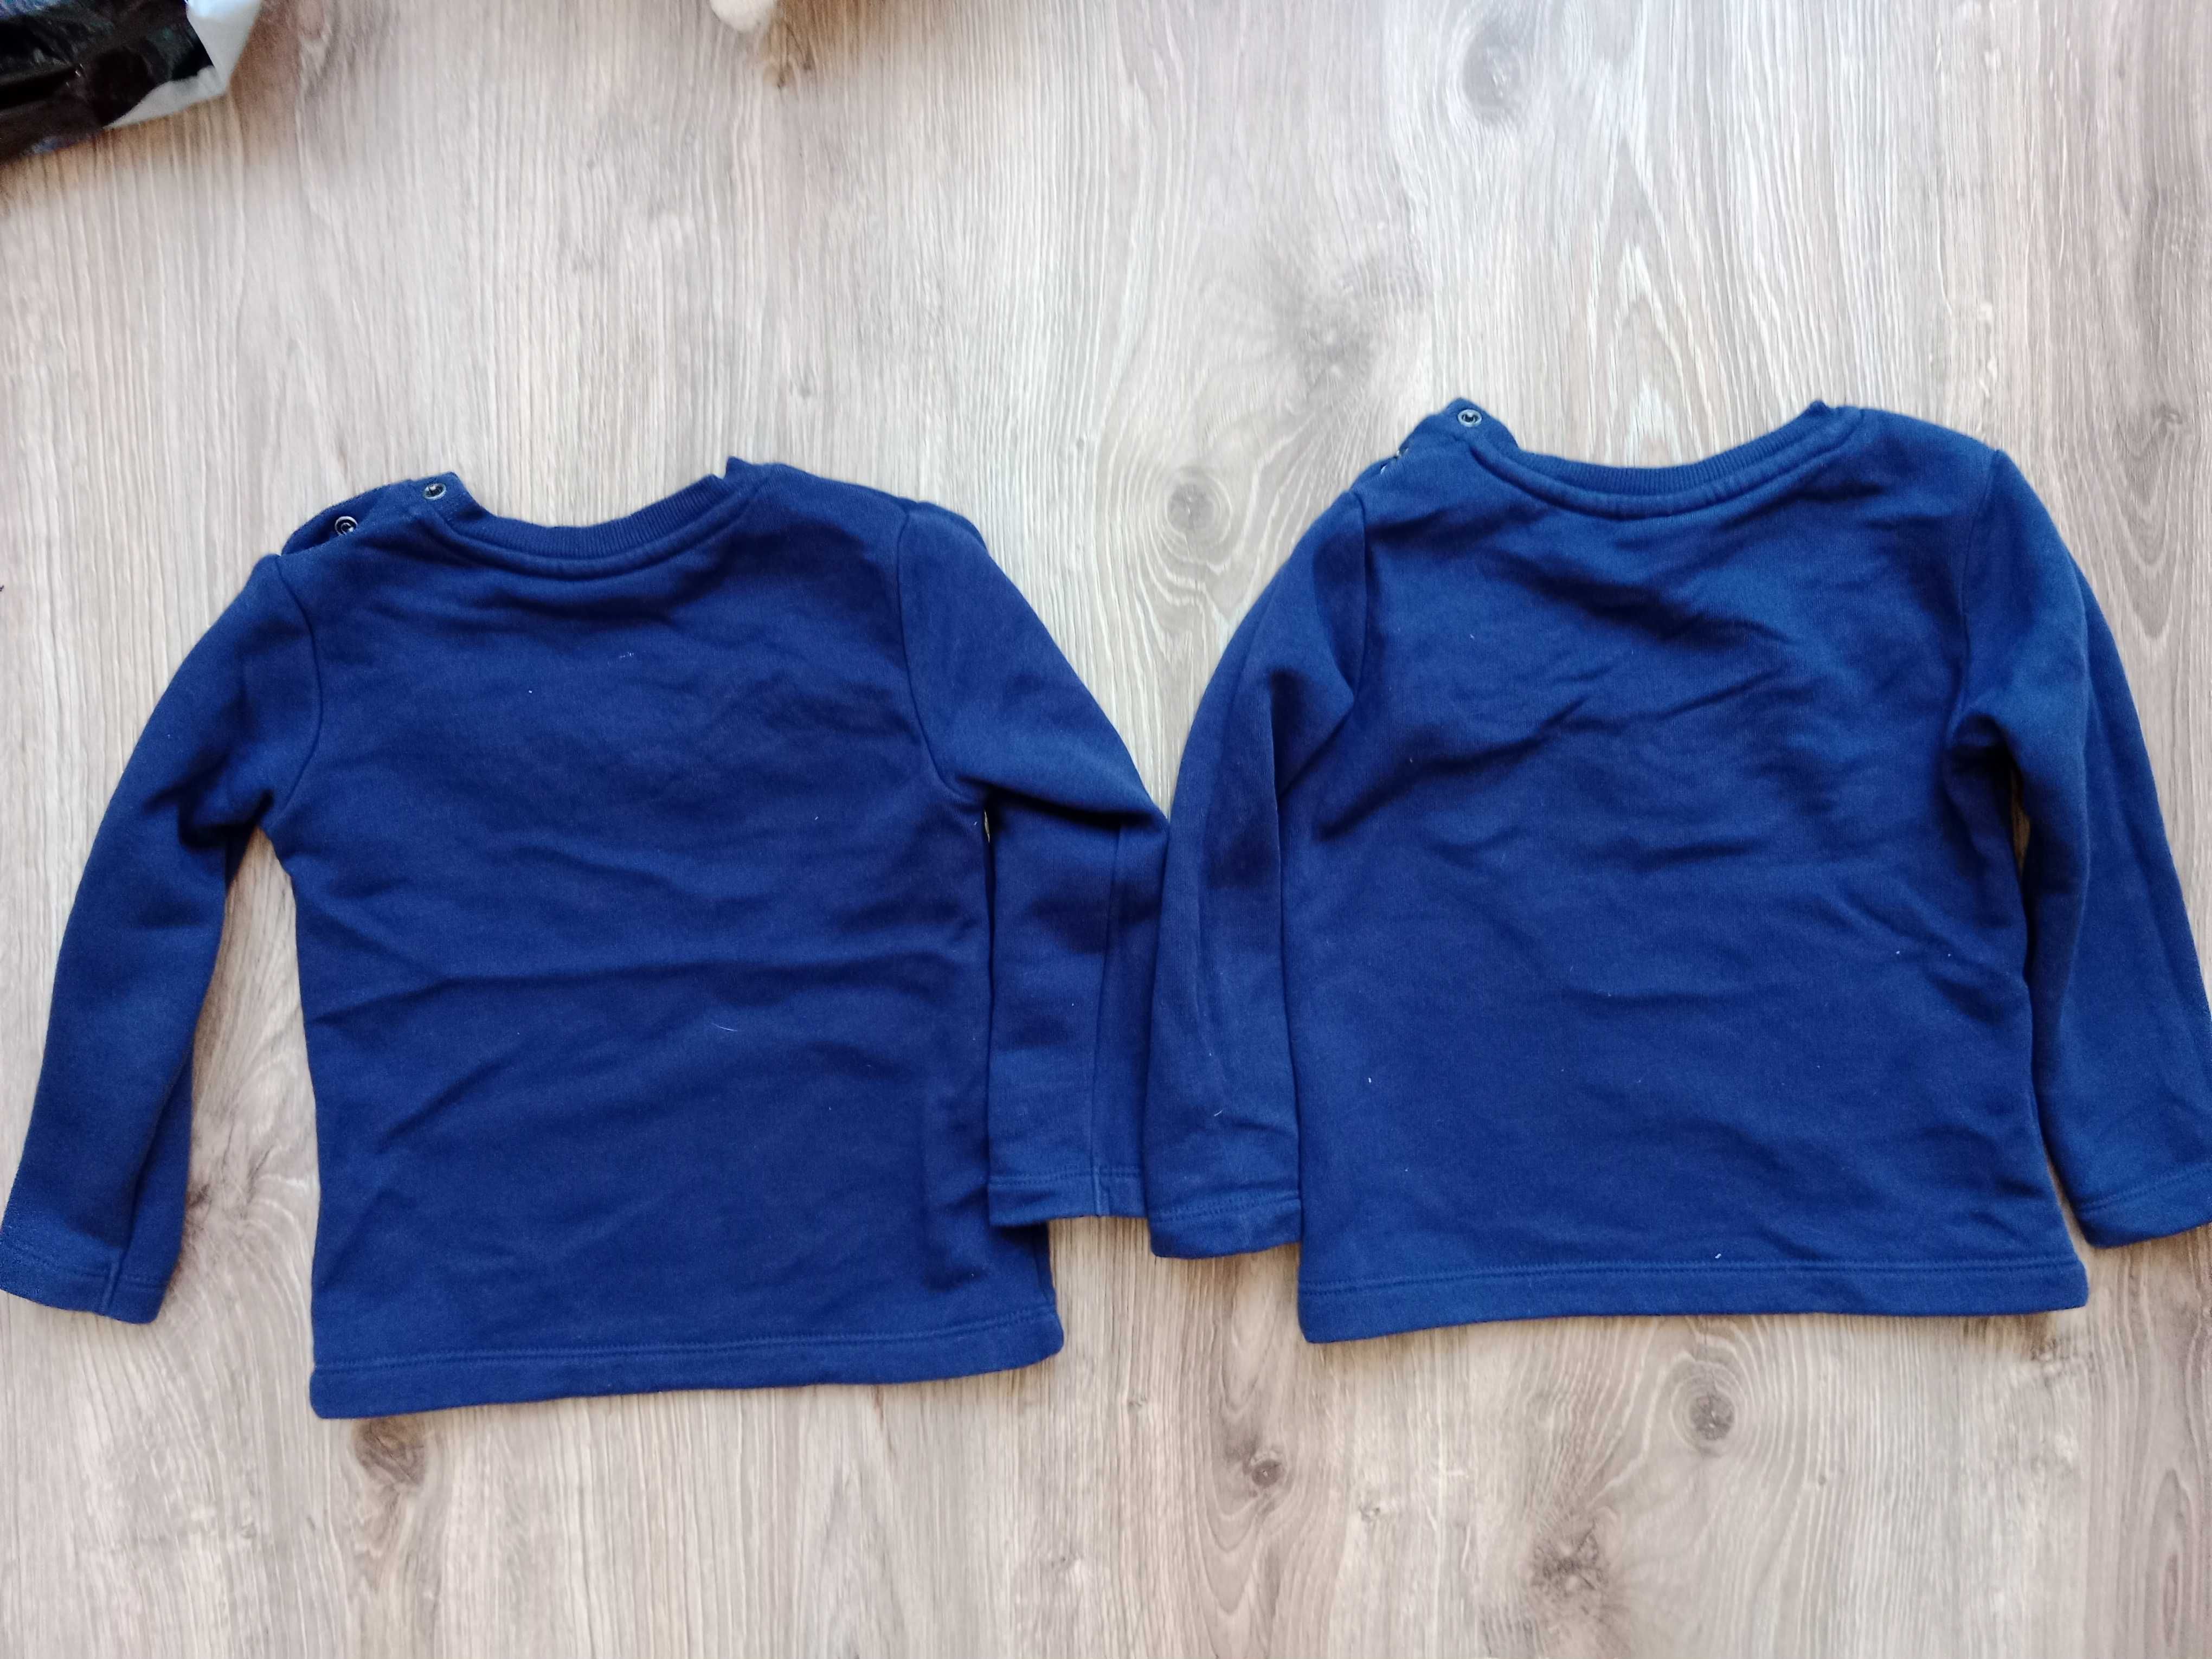 2 ciepłe bluzy koszulki polarowe dziewczynka 86/92